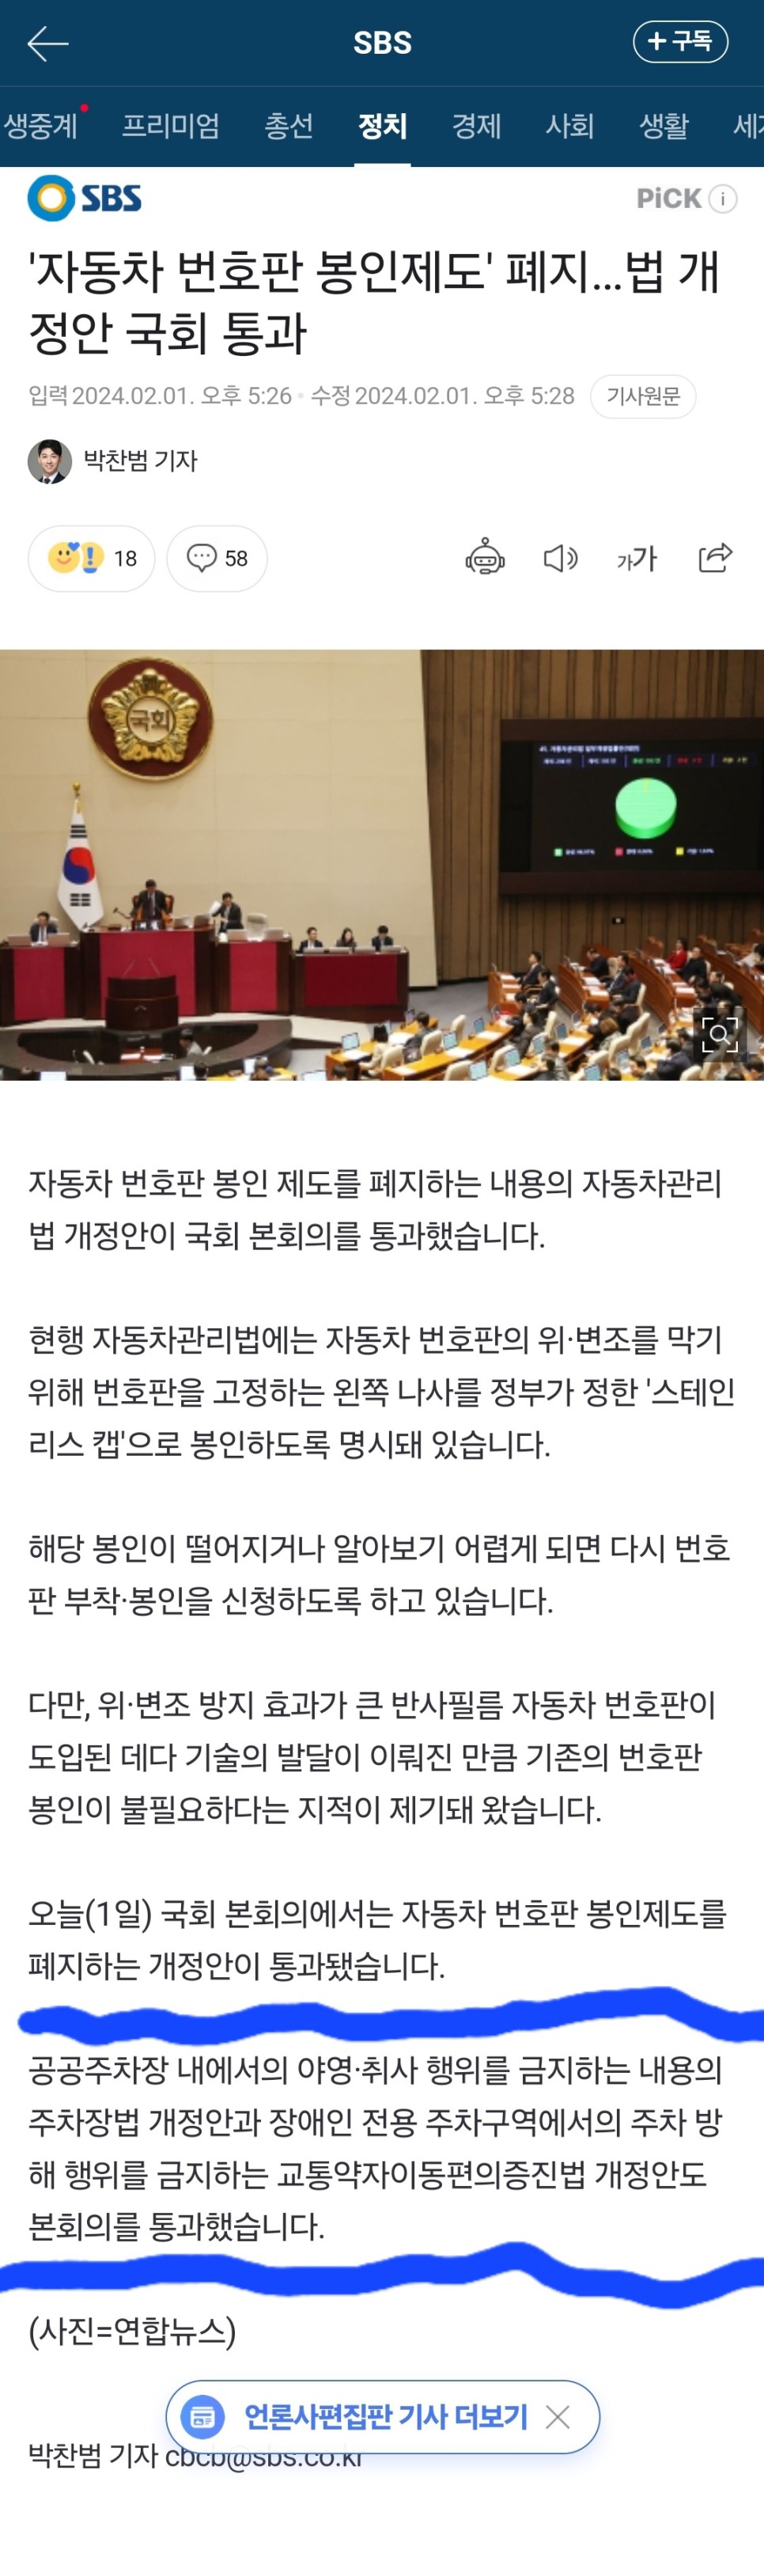 주차장법 개정안 차박금지법 국회 본회의 통과는 가짜뉴스?